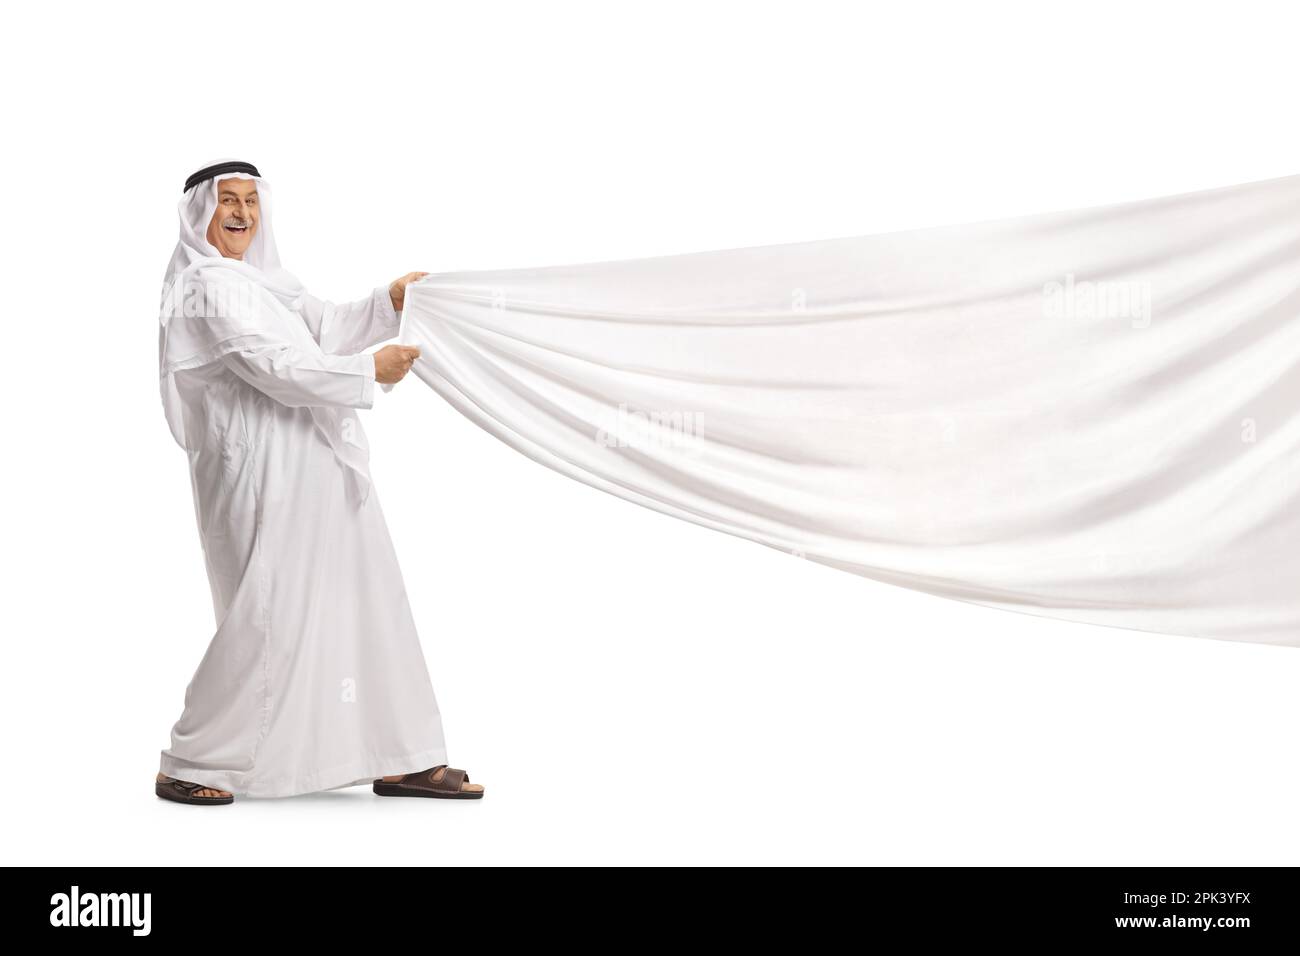 Uomo arabo in abiti tradizionali che tira un pezzo di tessuto bianco isolato su sfondo bianco Foto Stock